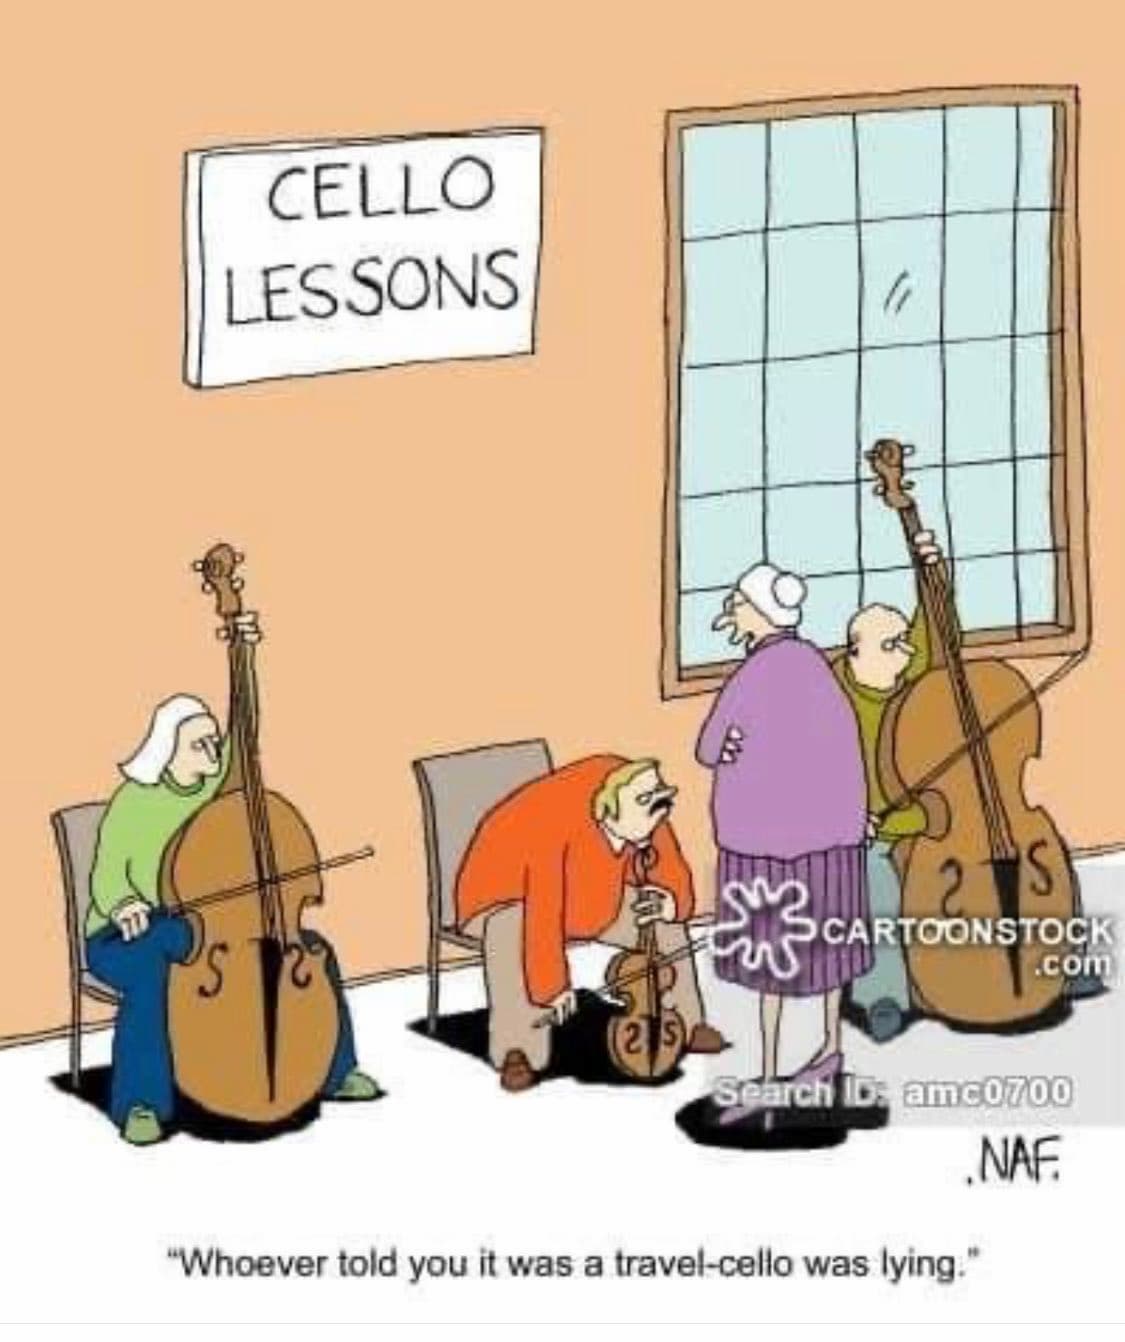 A Travel-Cello?!